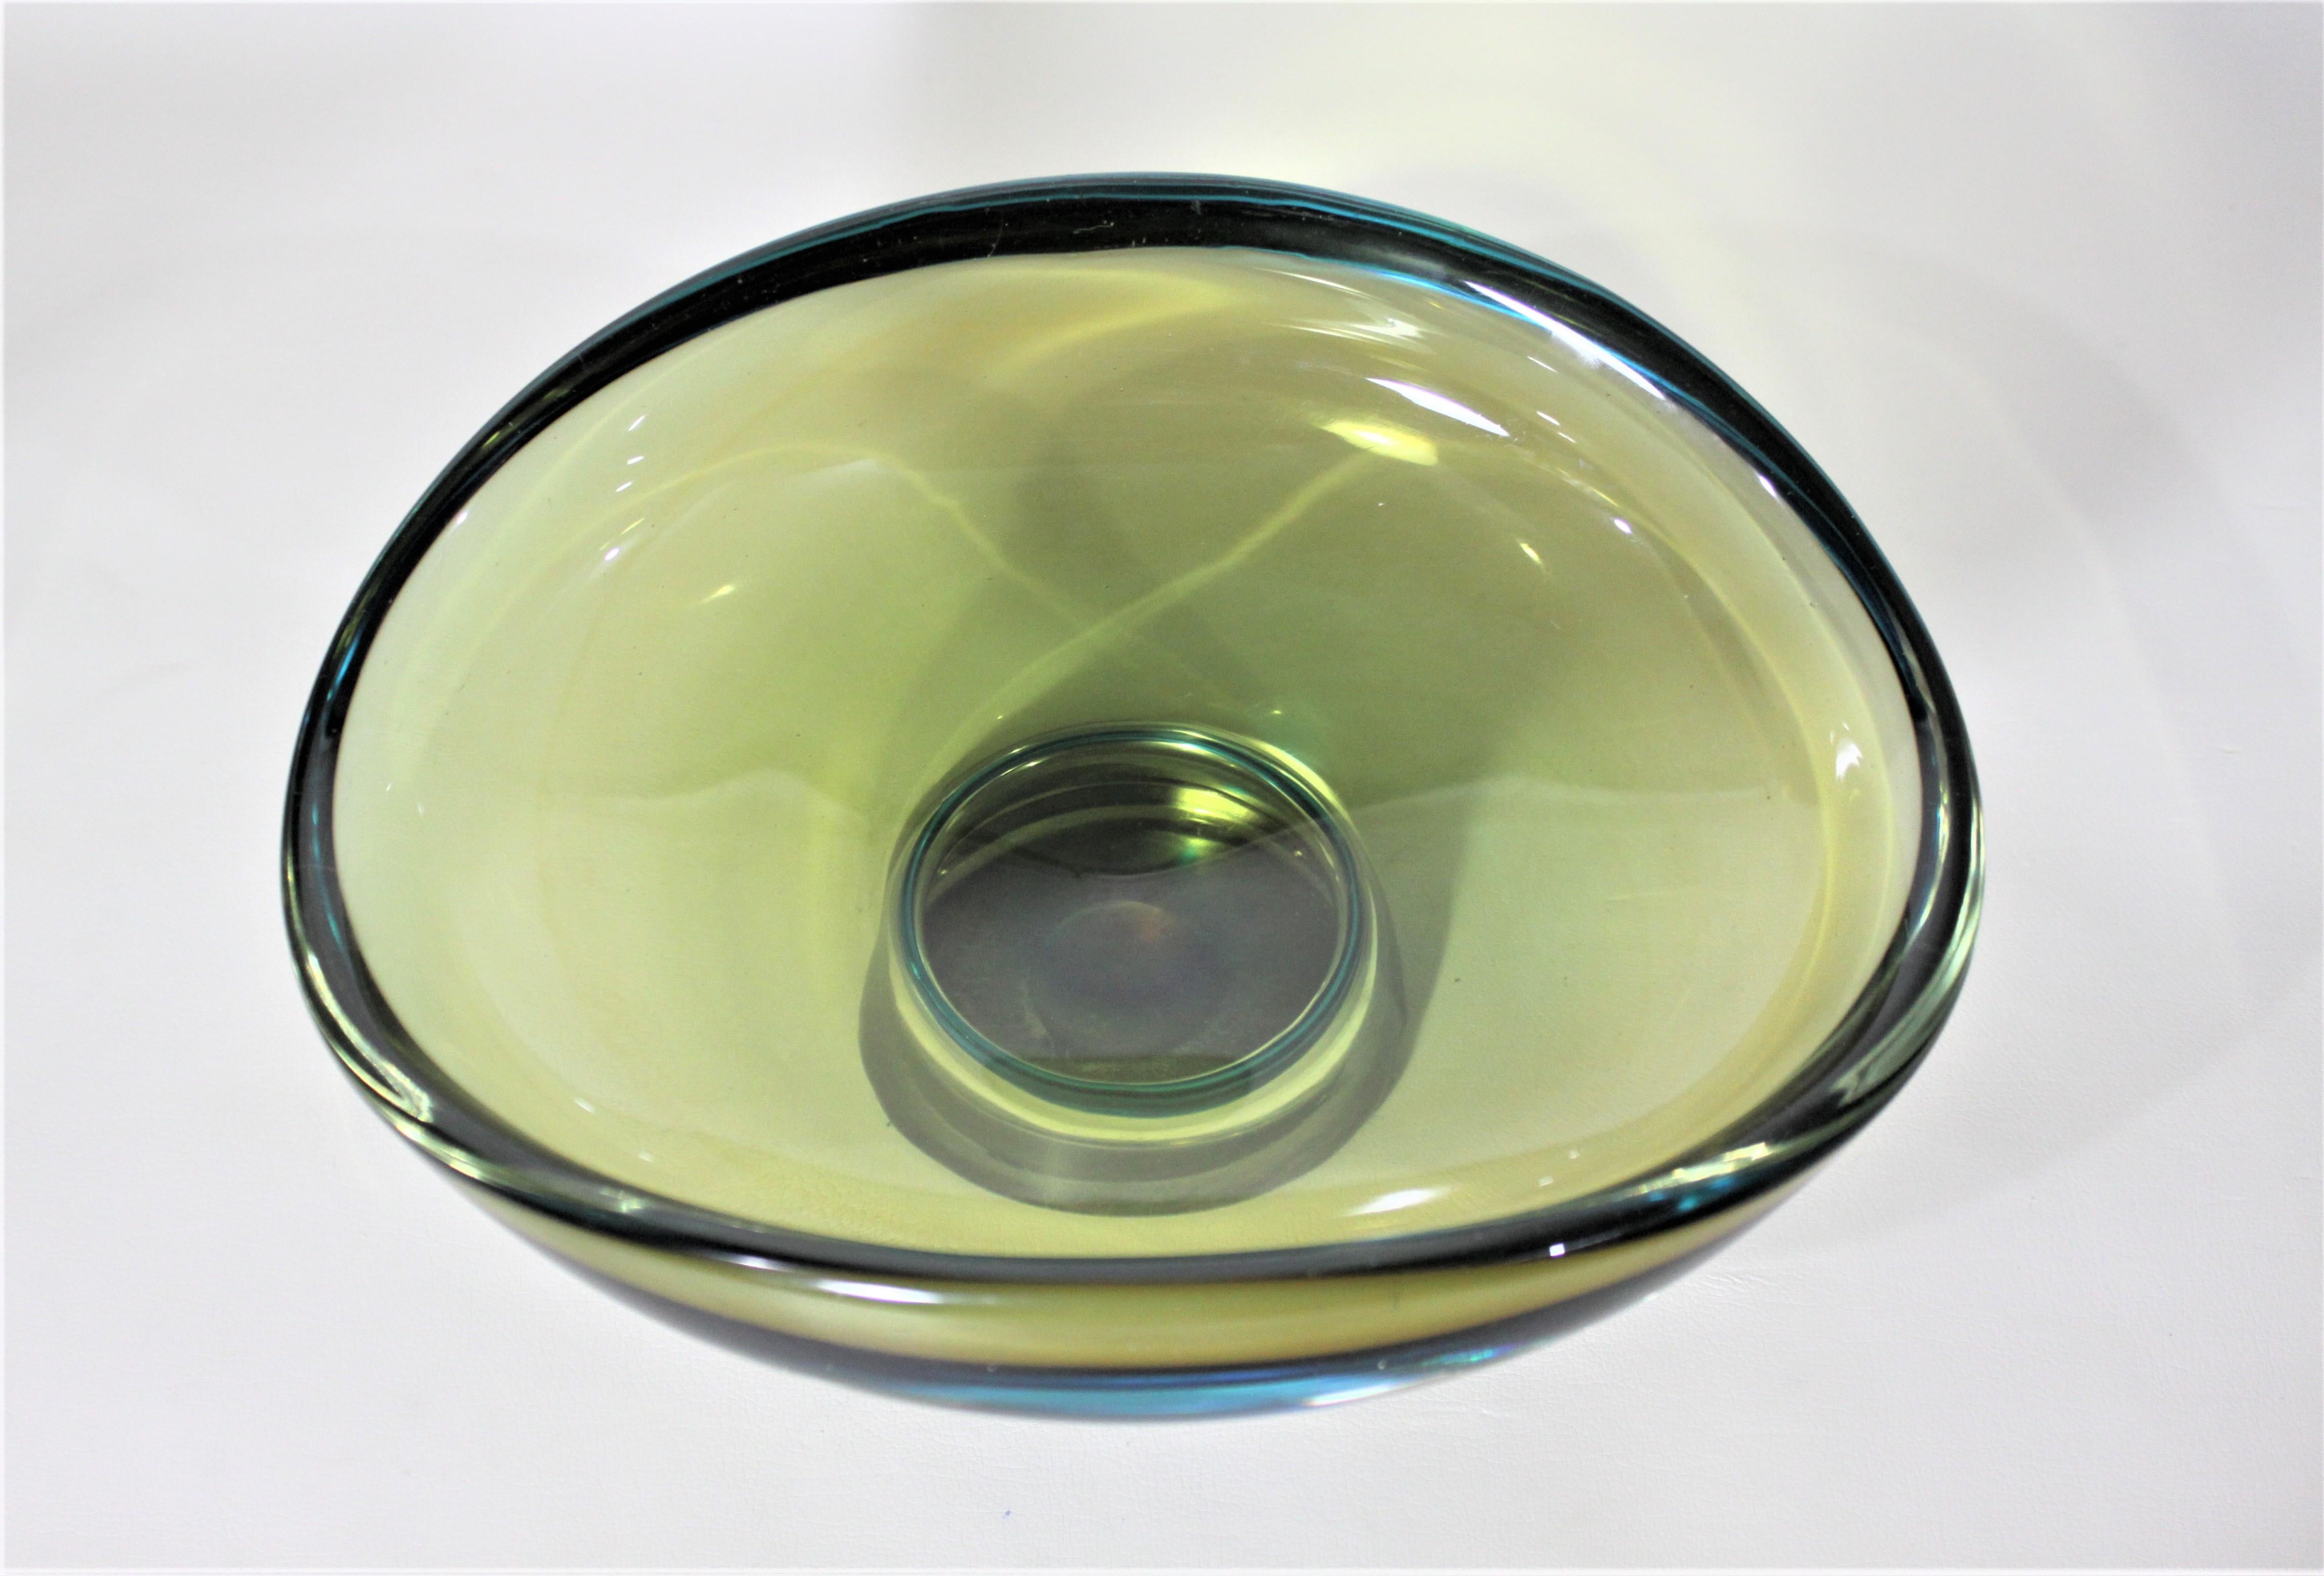 Hand-Crafted Mid-Century Modern Scandinavian Art Glass Pedestal Bowl or Centerpiece